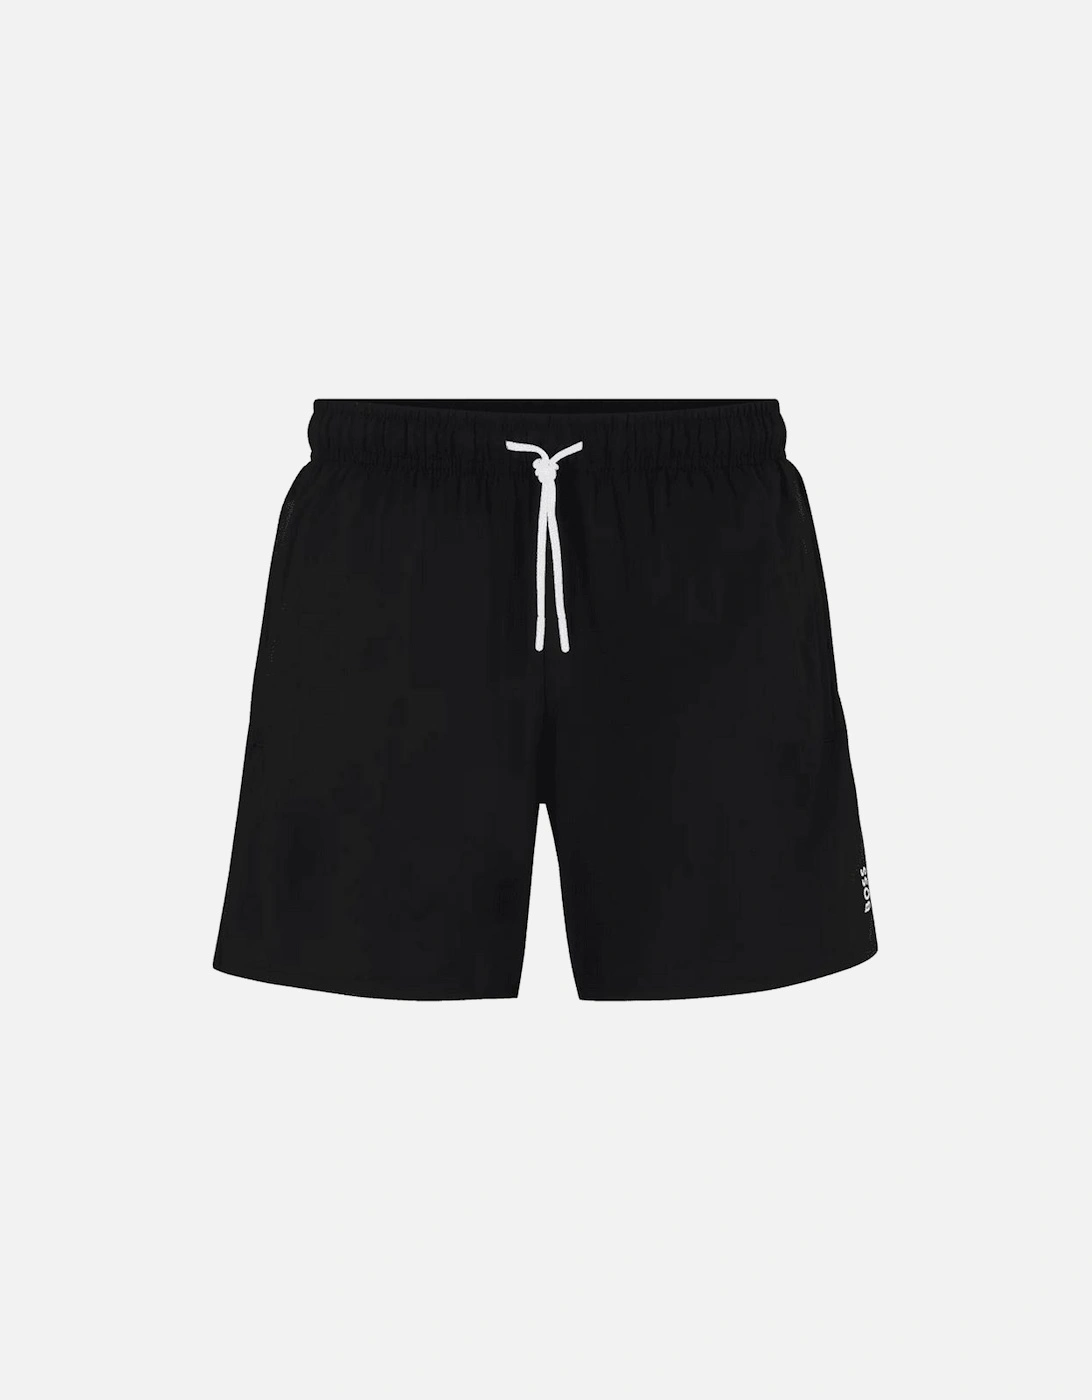 Iconic Stripe Logo Black Swim Shorts, 3 of 2